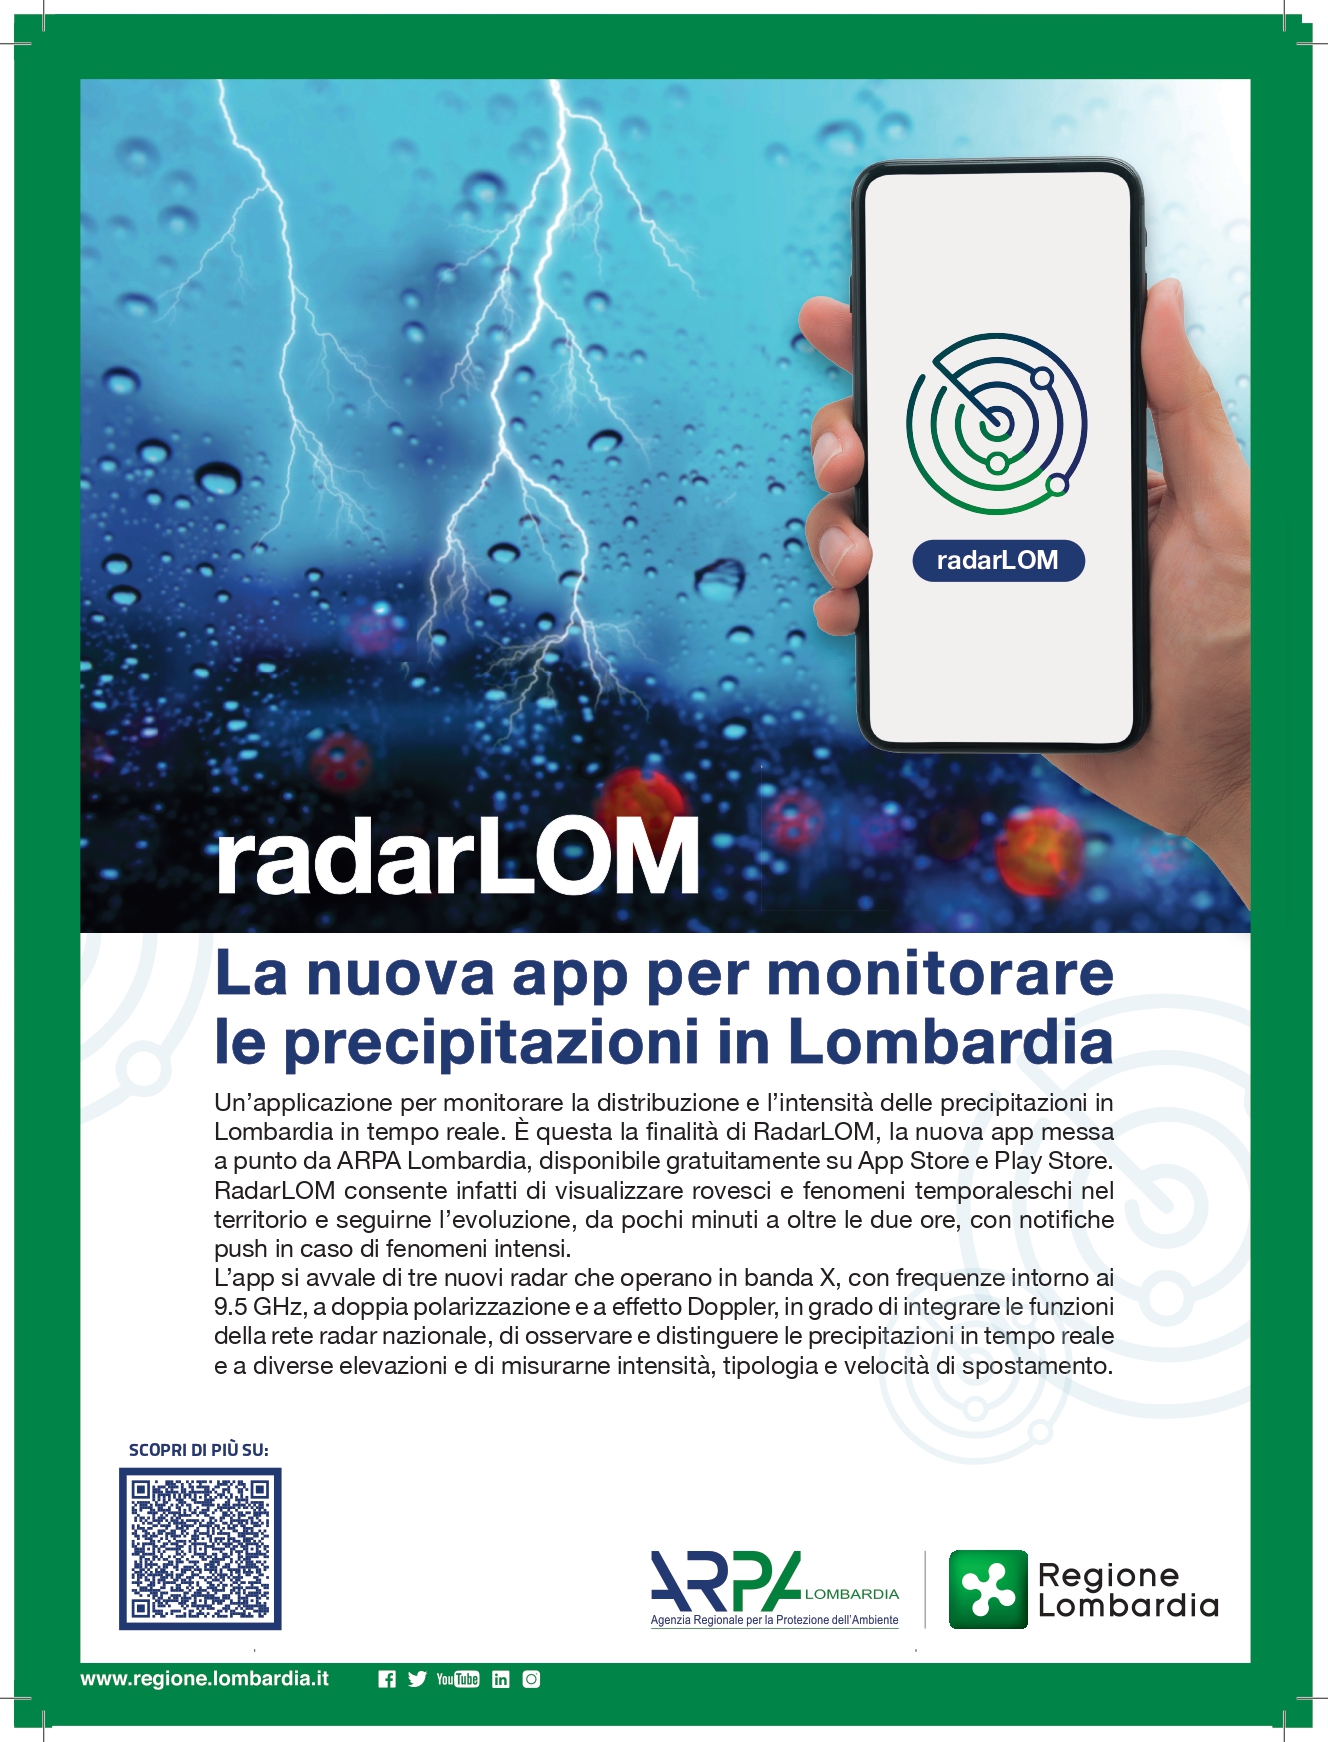 Immagine RadarLOM - La nuova app per monitorare le precipitazioni in Lombardia